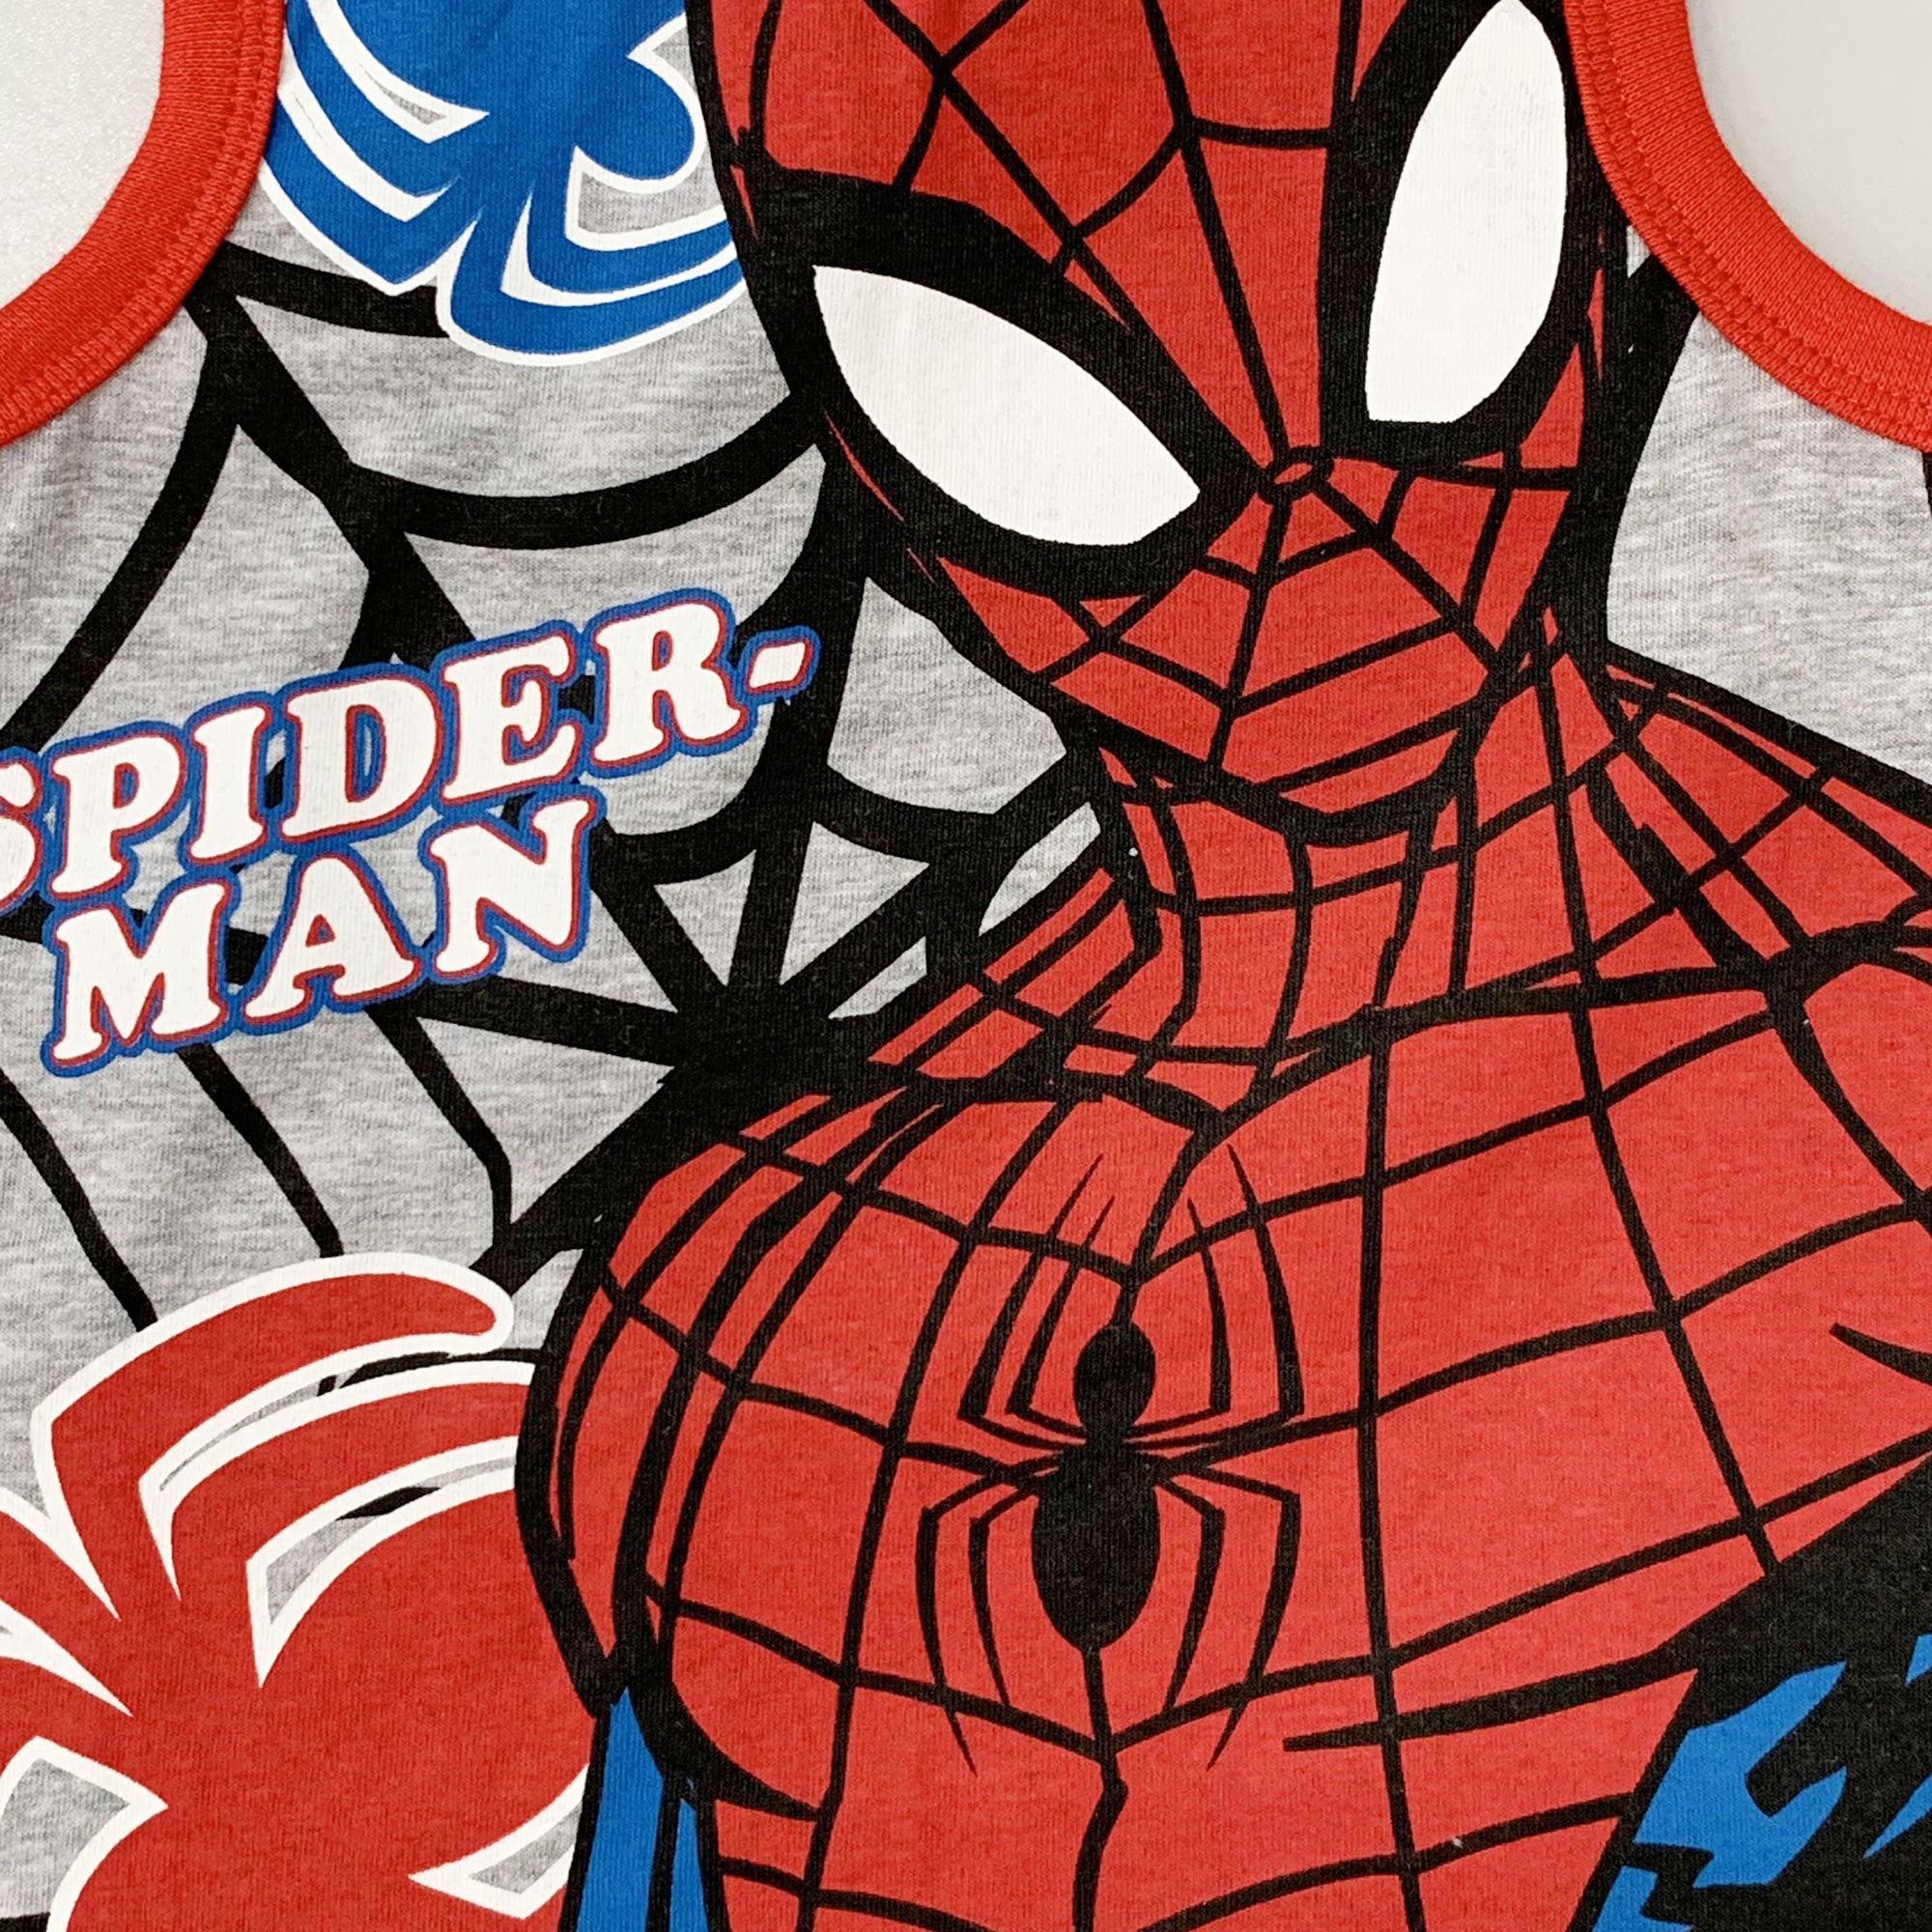 Pigiama bambino Marvel Spiderman canotta e pantaloncino in cotone stampato 6031